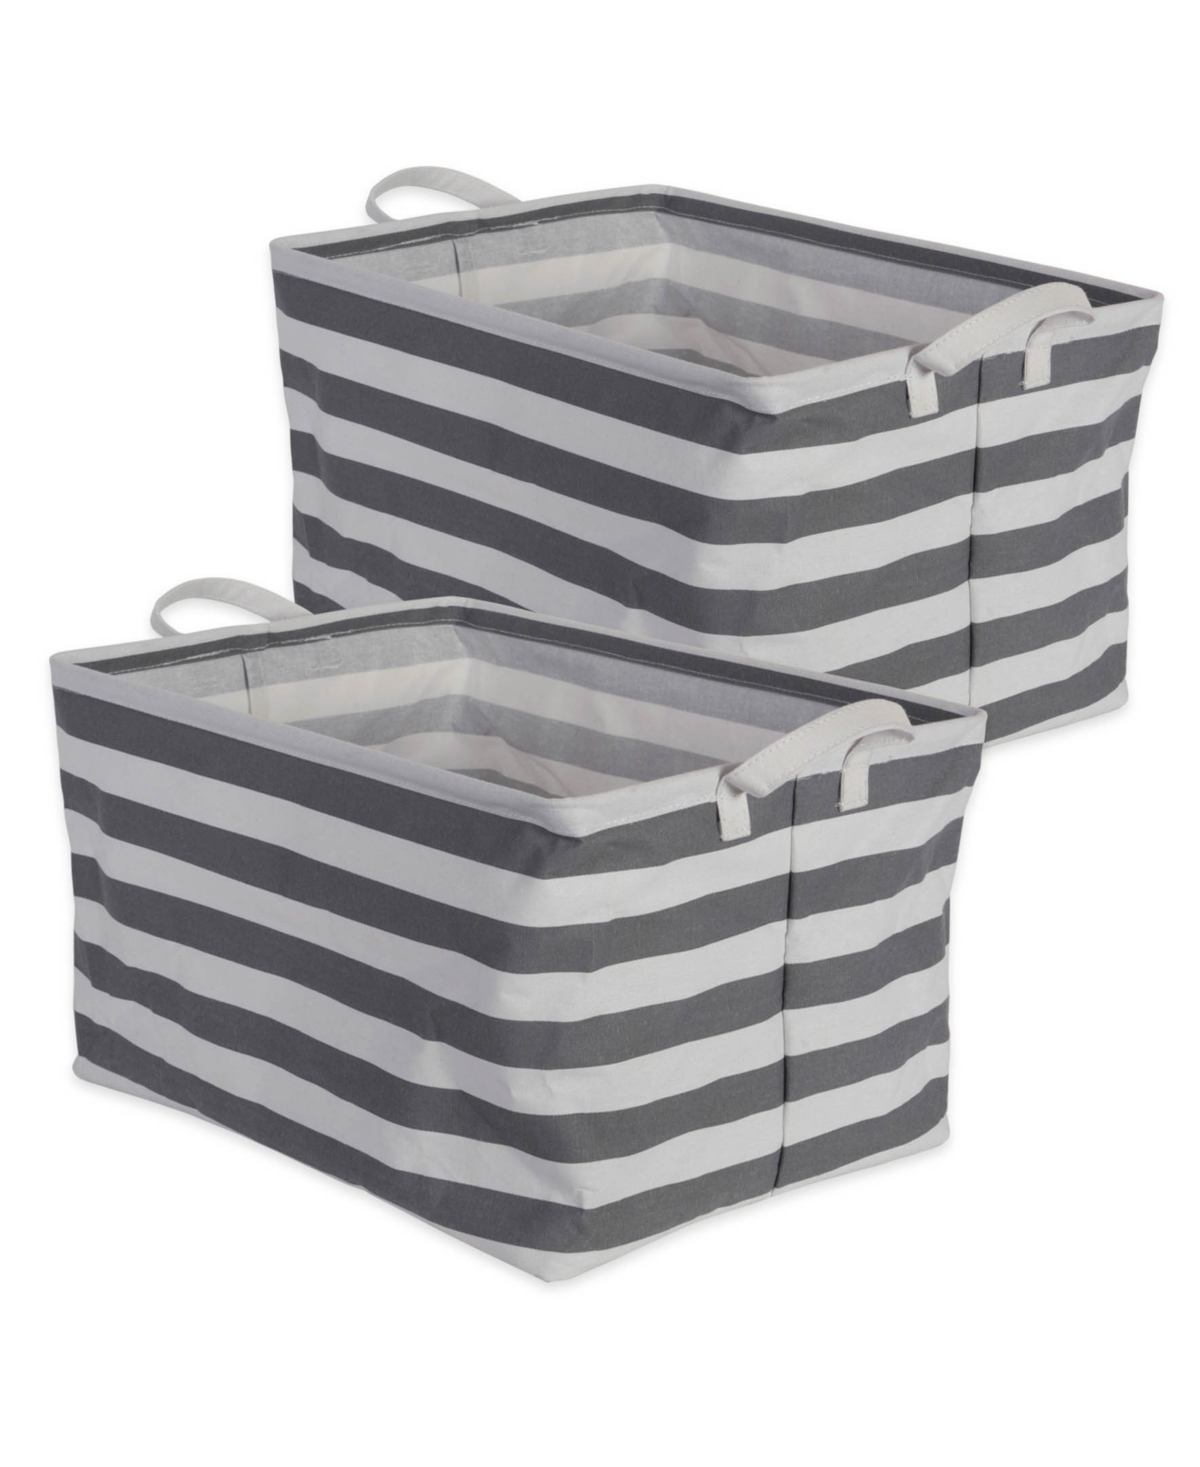 Polyethylene Coated Cotton Polyester Laundry Bin Stripe Rectangle Extra Large Set of 2 - Gray